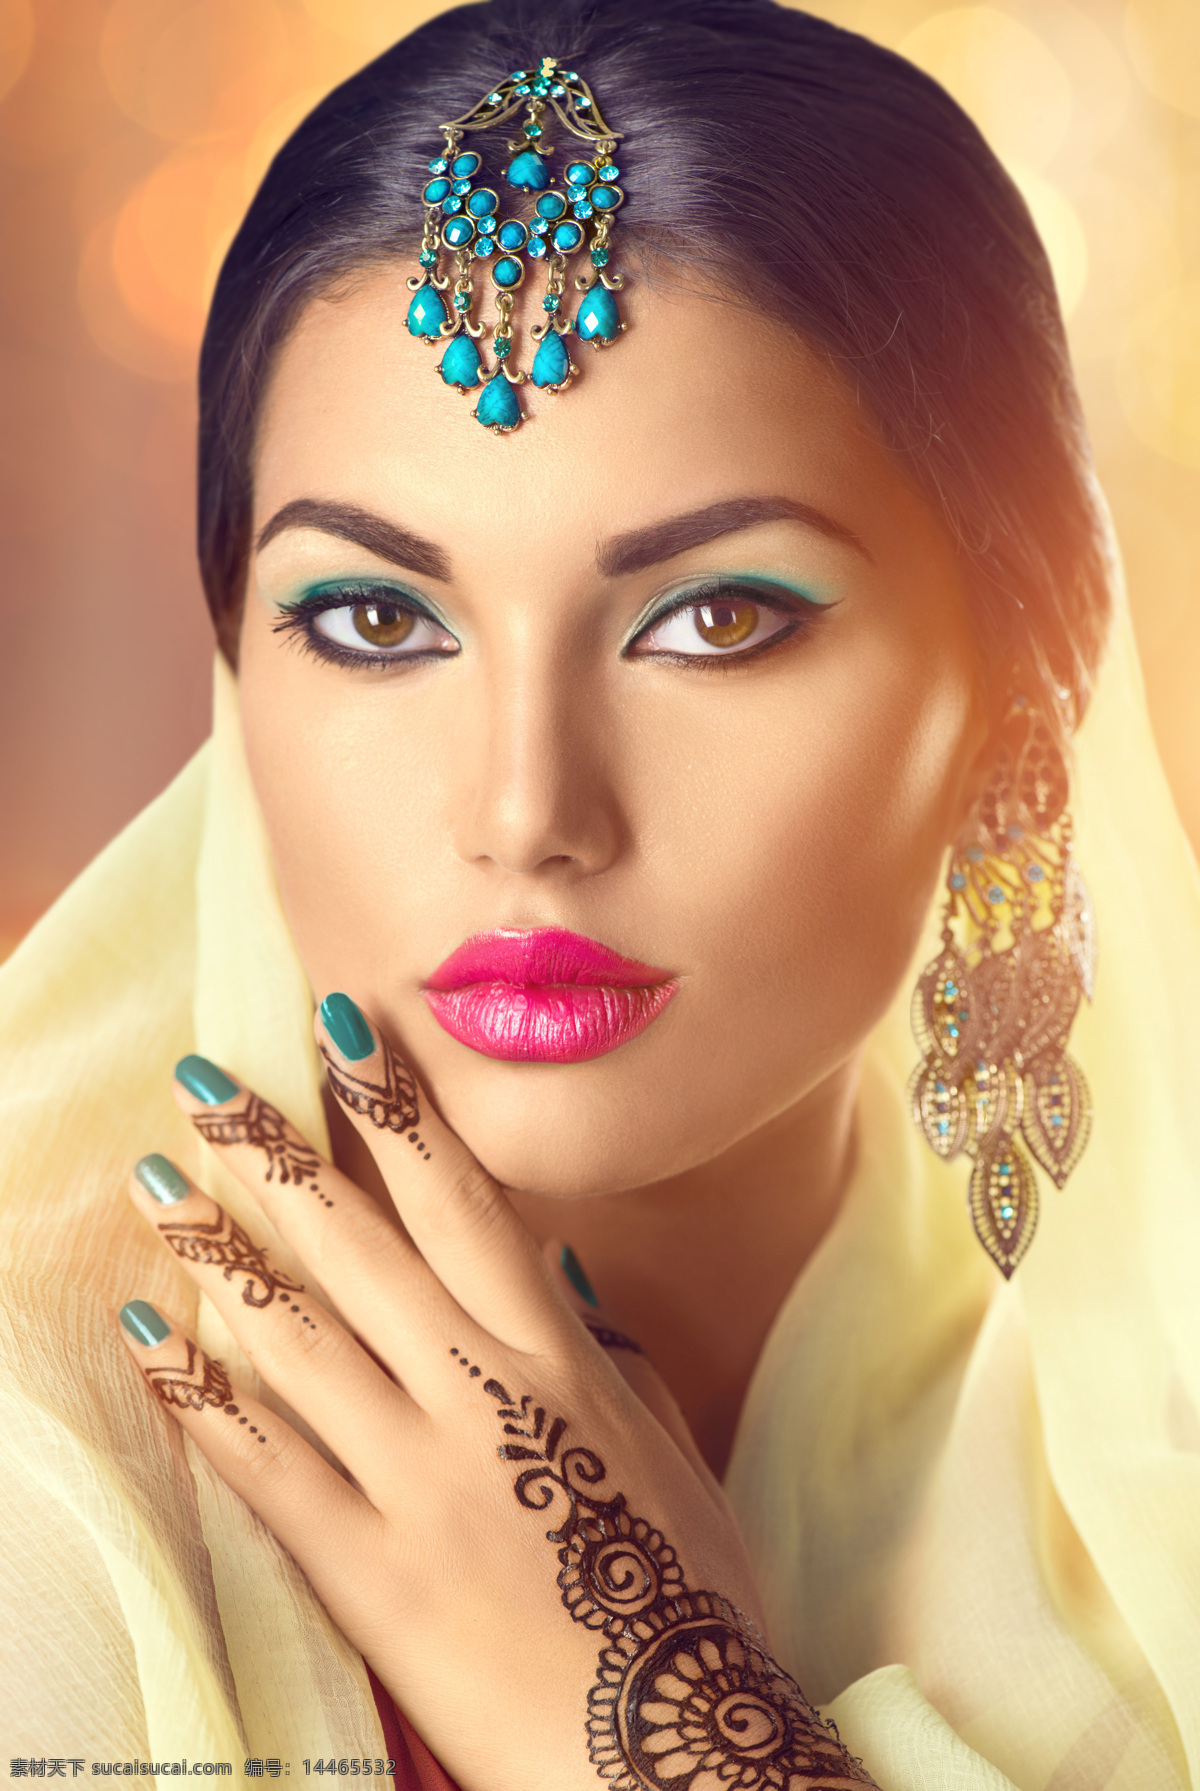 化妆 印度 美女图片 美女 性感美女 时尚女性 红唇 美女模特 印度女性 外国女人 美女摄影 美女写真 女性女人 人物图片